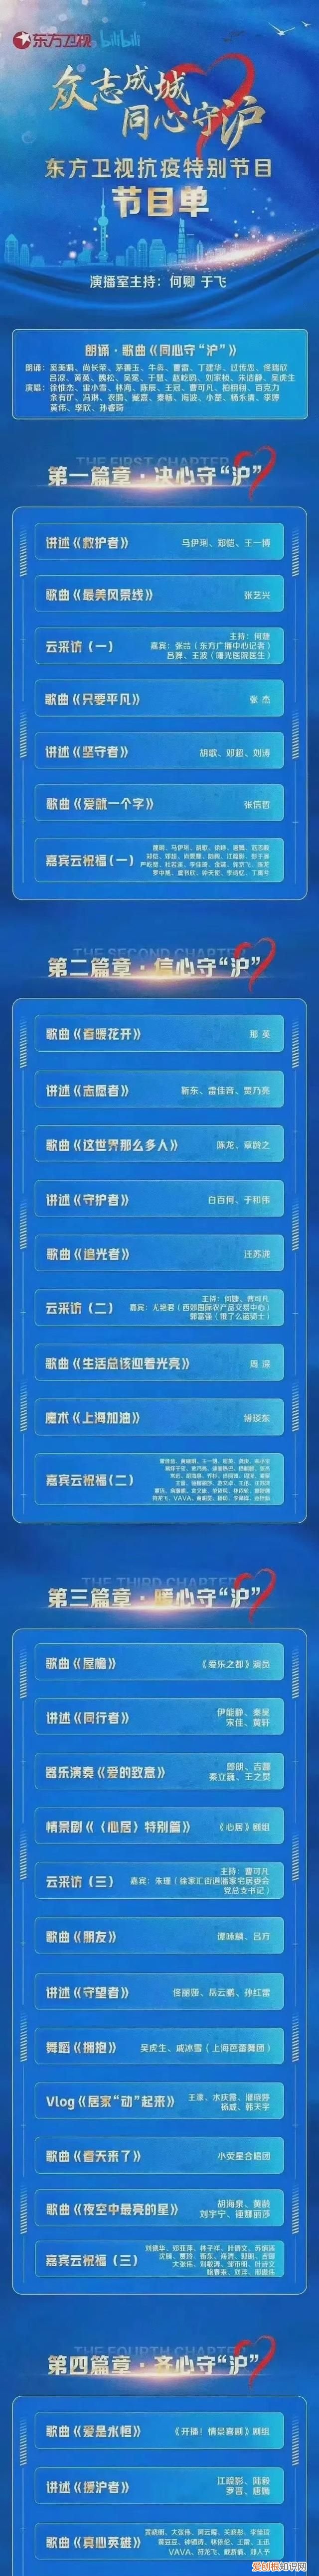 上海台东方卫视节目预告